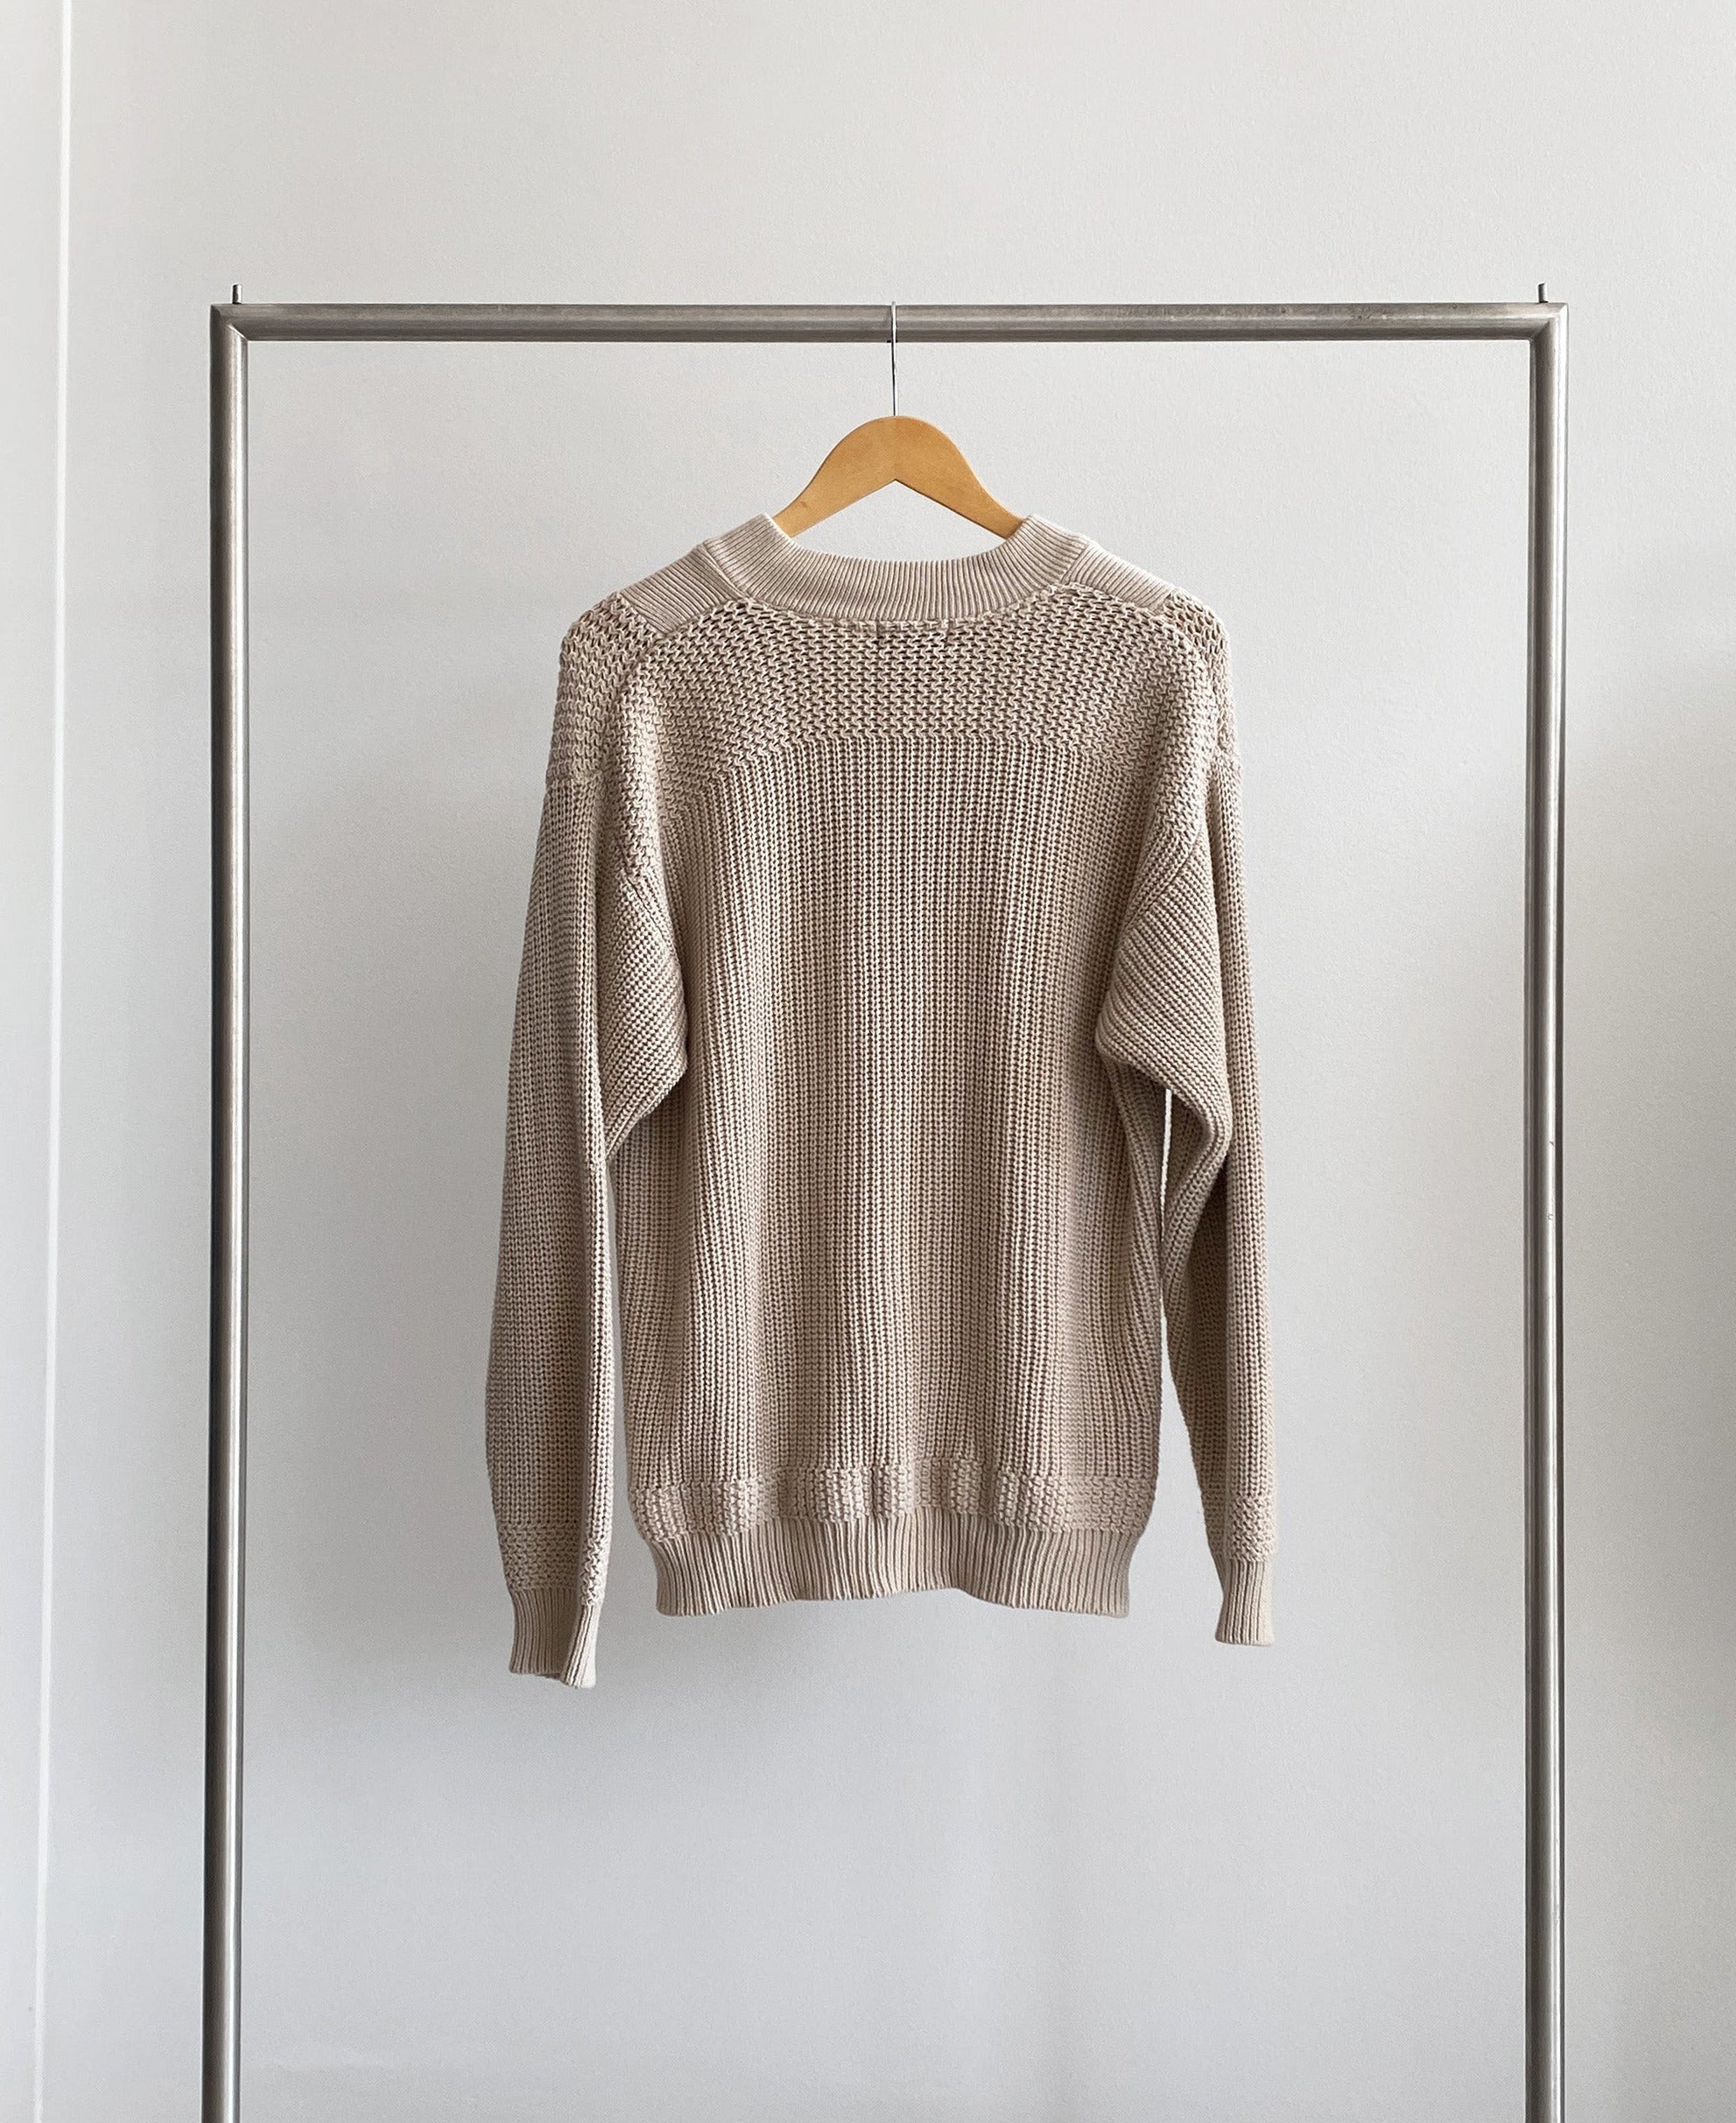 Beige Knit Sweater